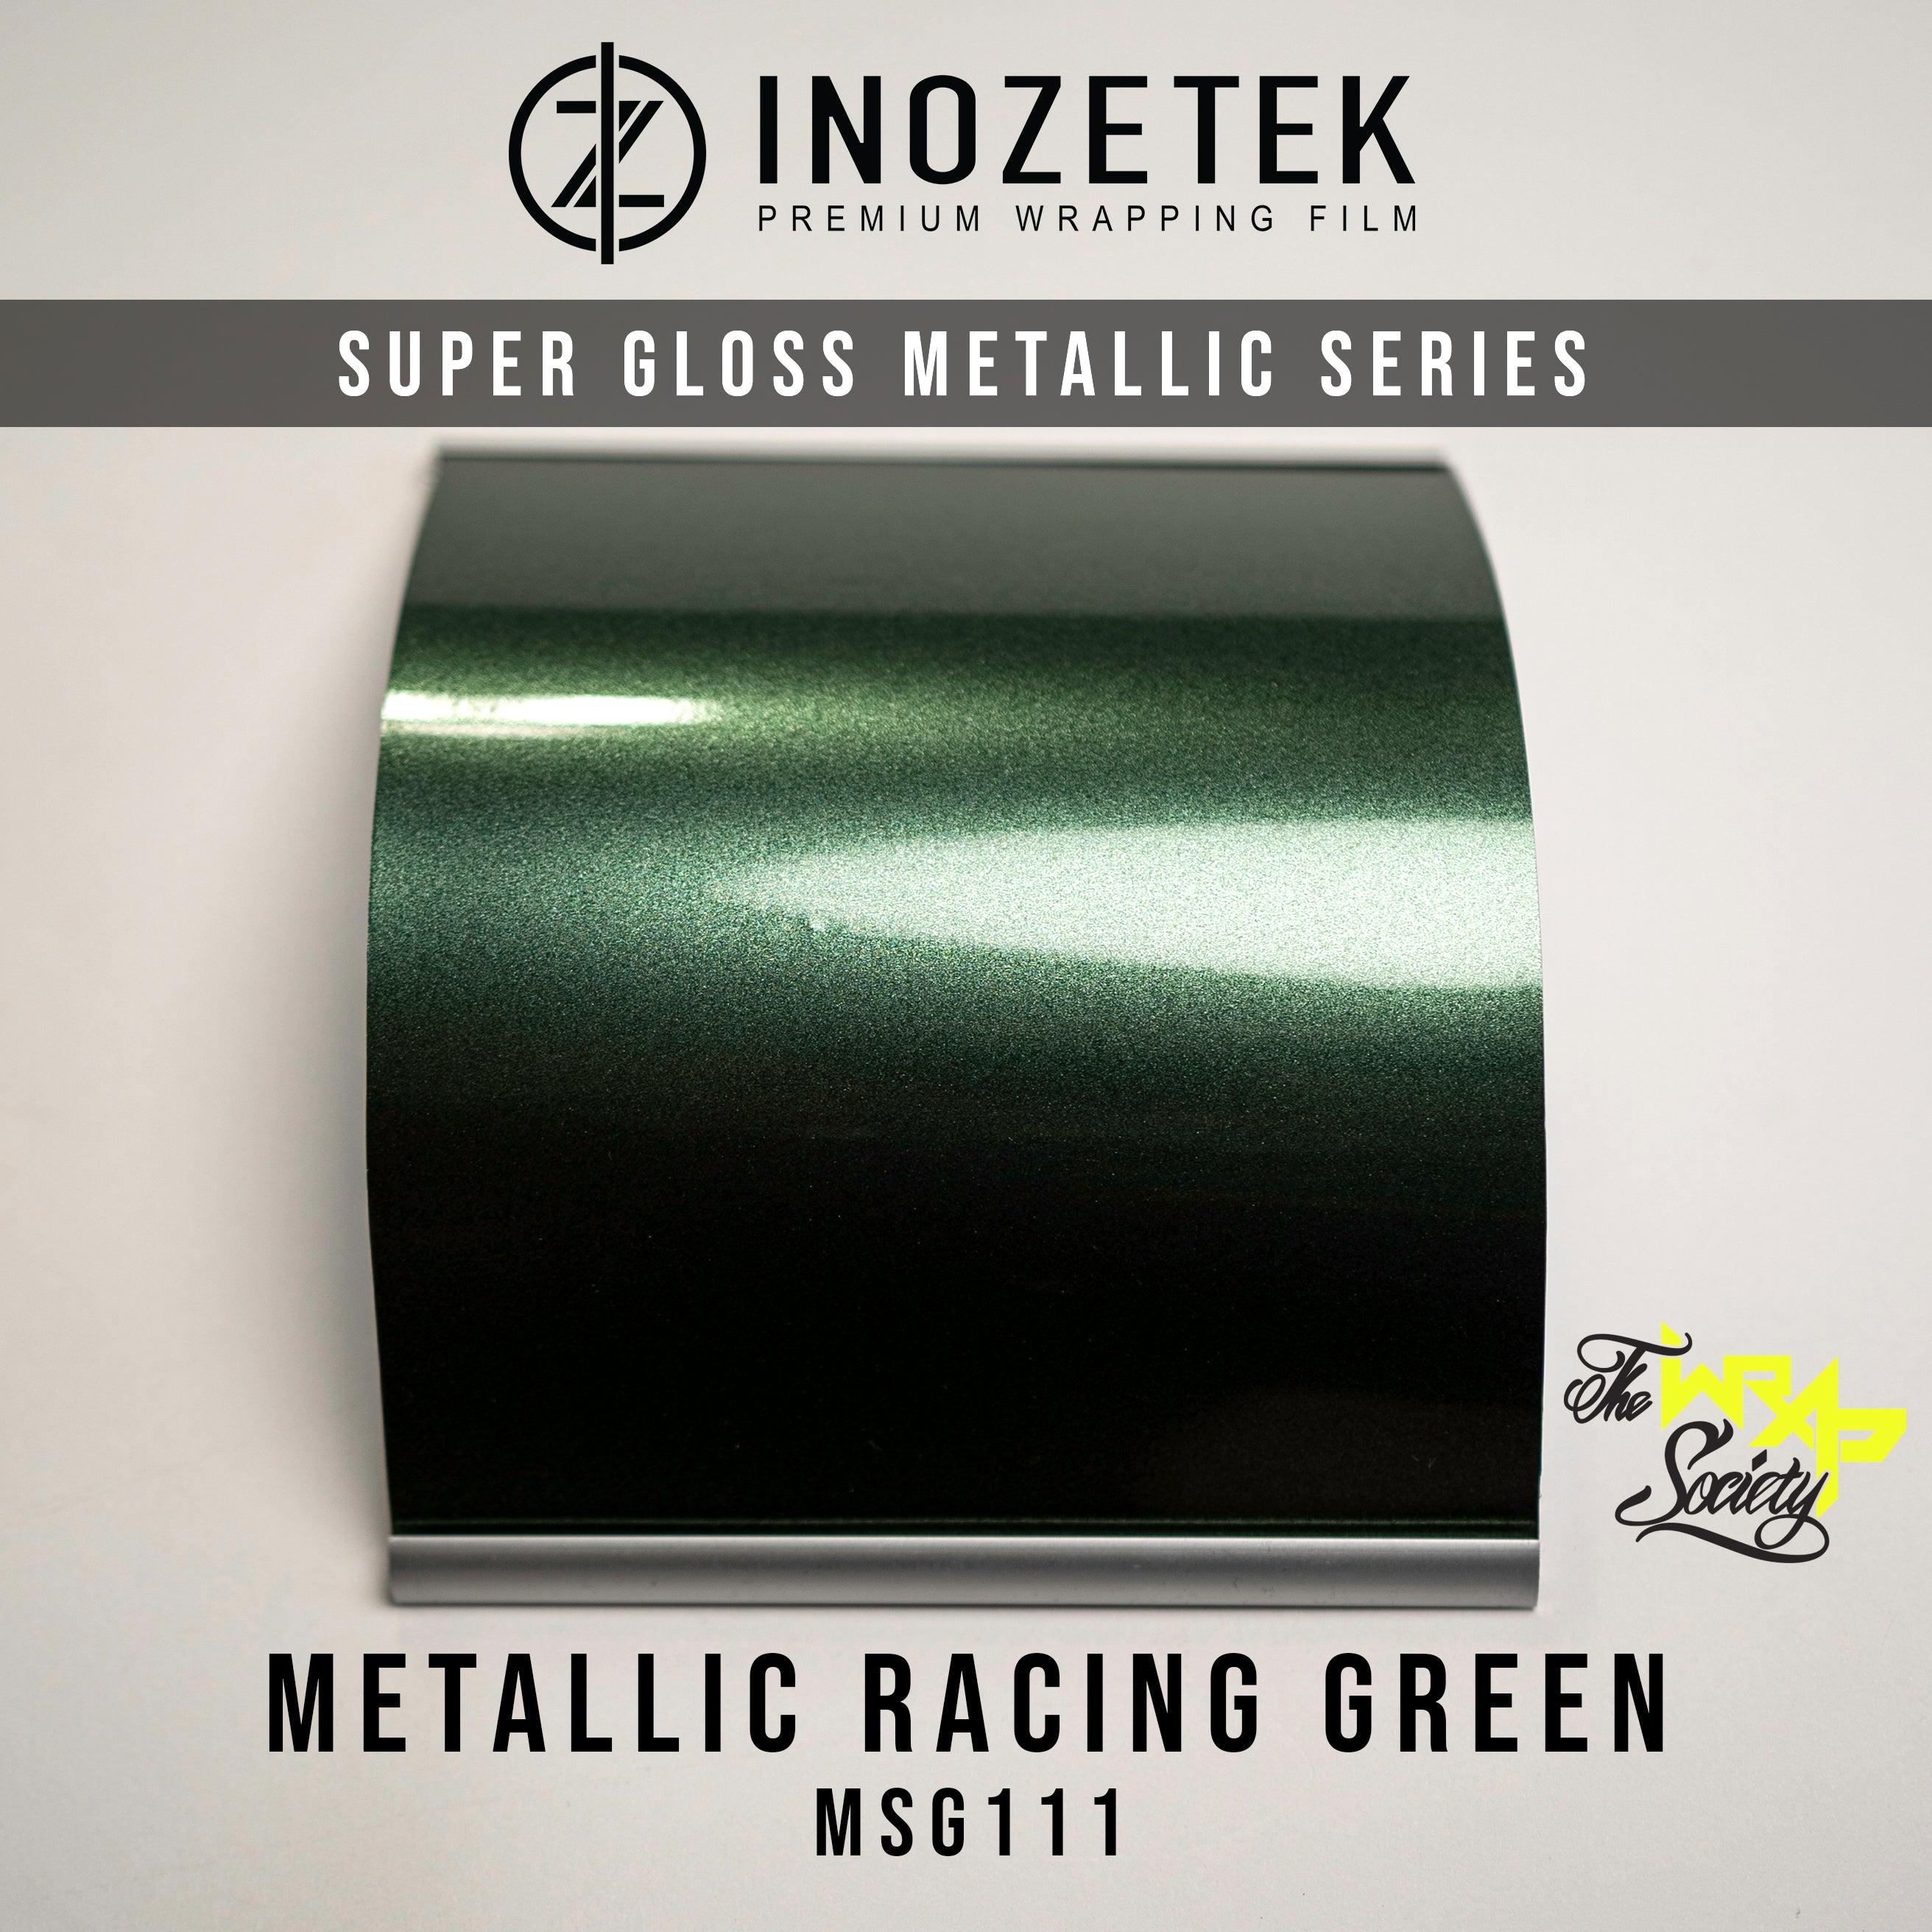 Super Gloss Metallic Racing Green - Inozetek USA